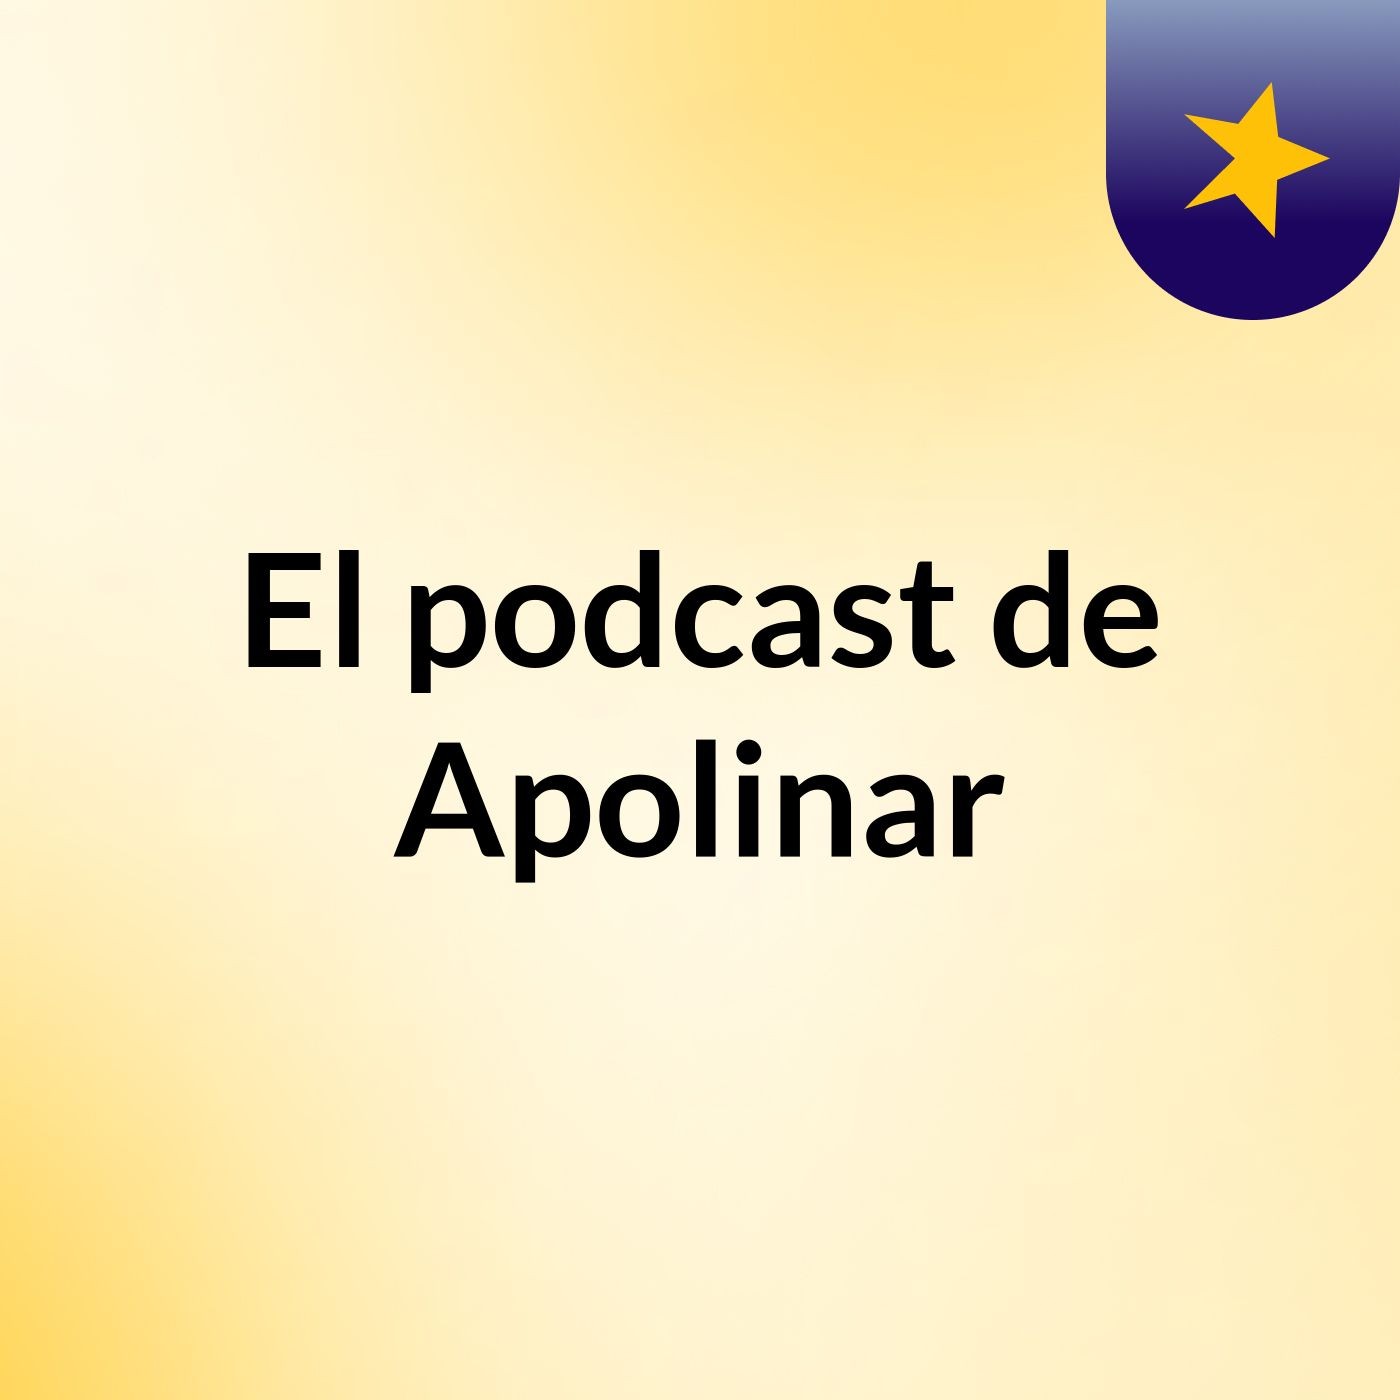 Episodio 10 - El podcast de Apolinar